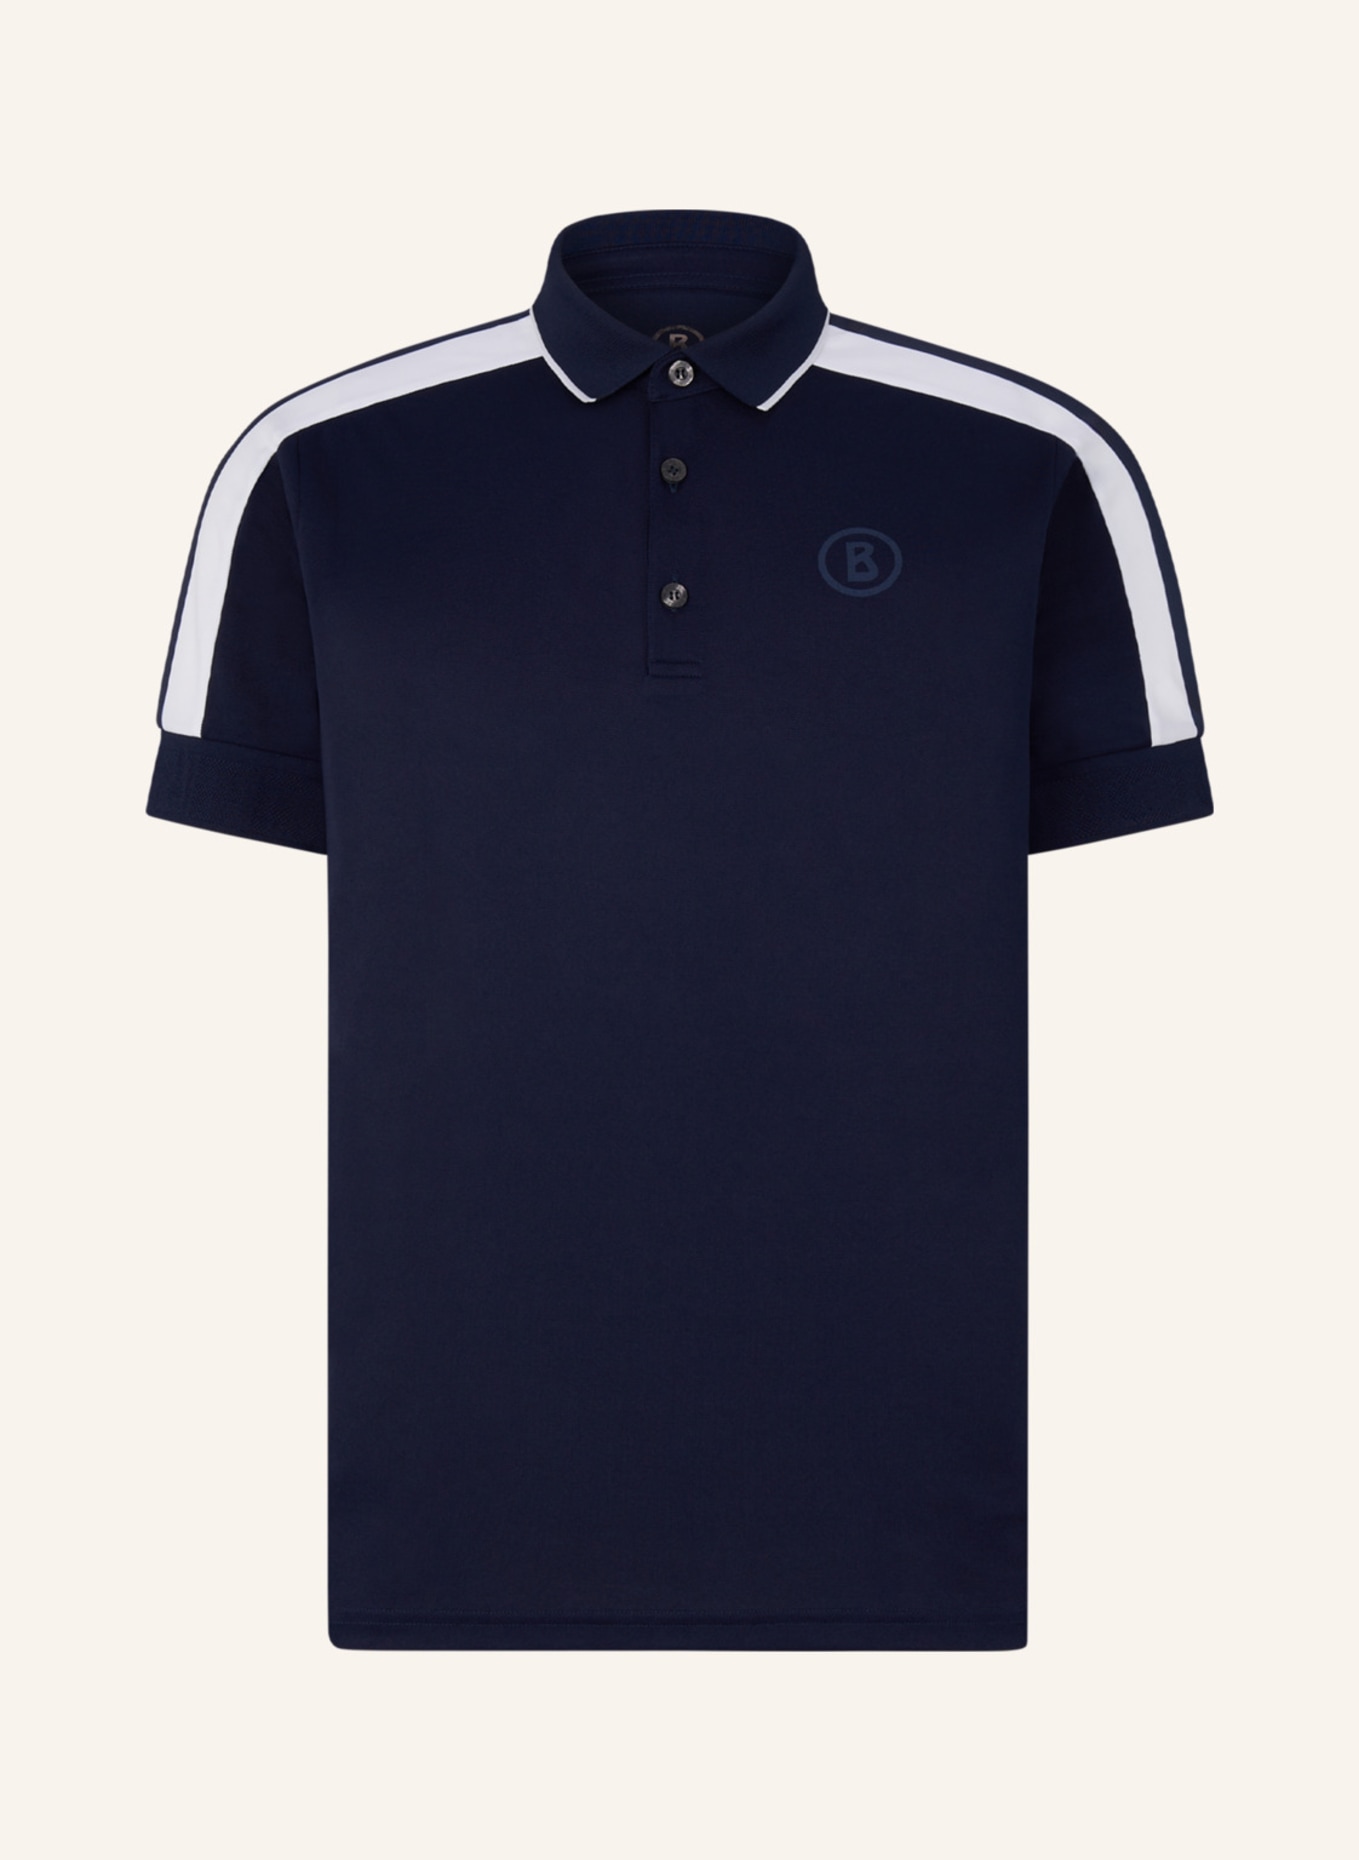 BOGNER Polo-Shirt CLAUDIUS, Farbe: DUNKELBLAU/ WEISS (Bild 1)